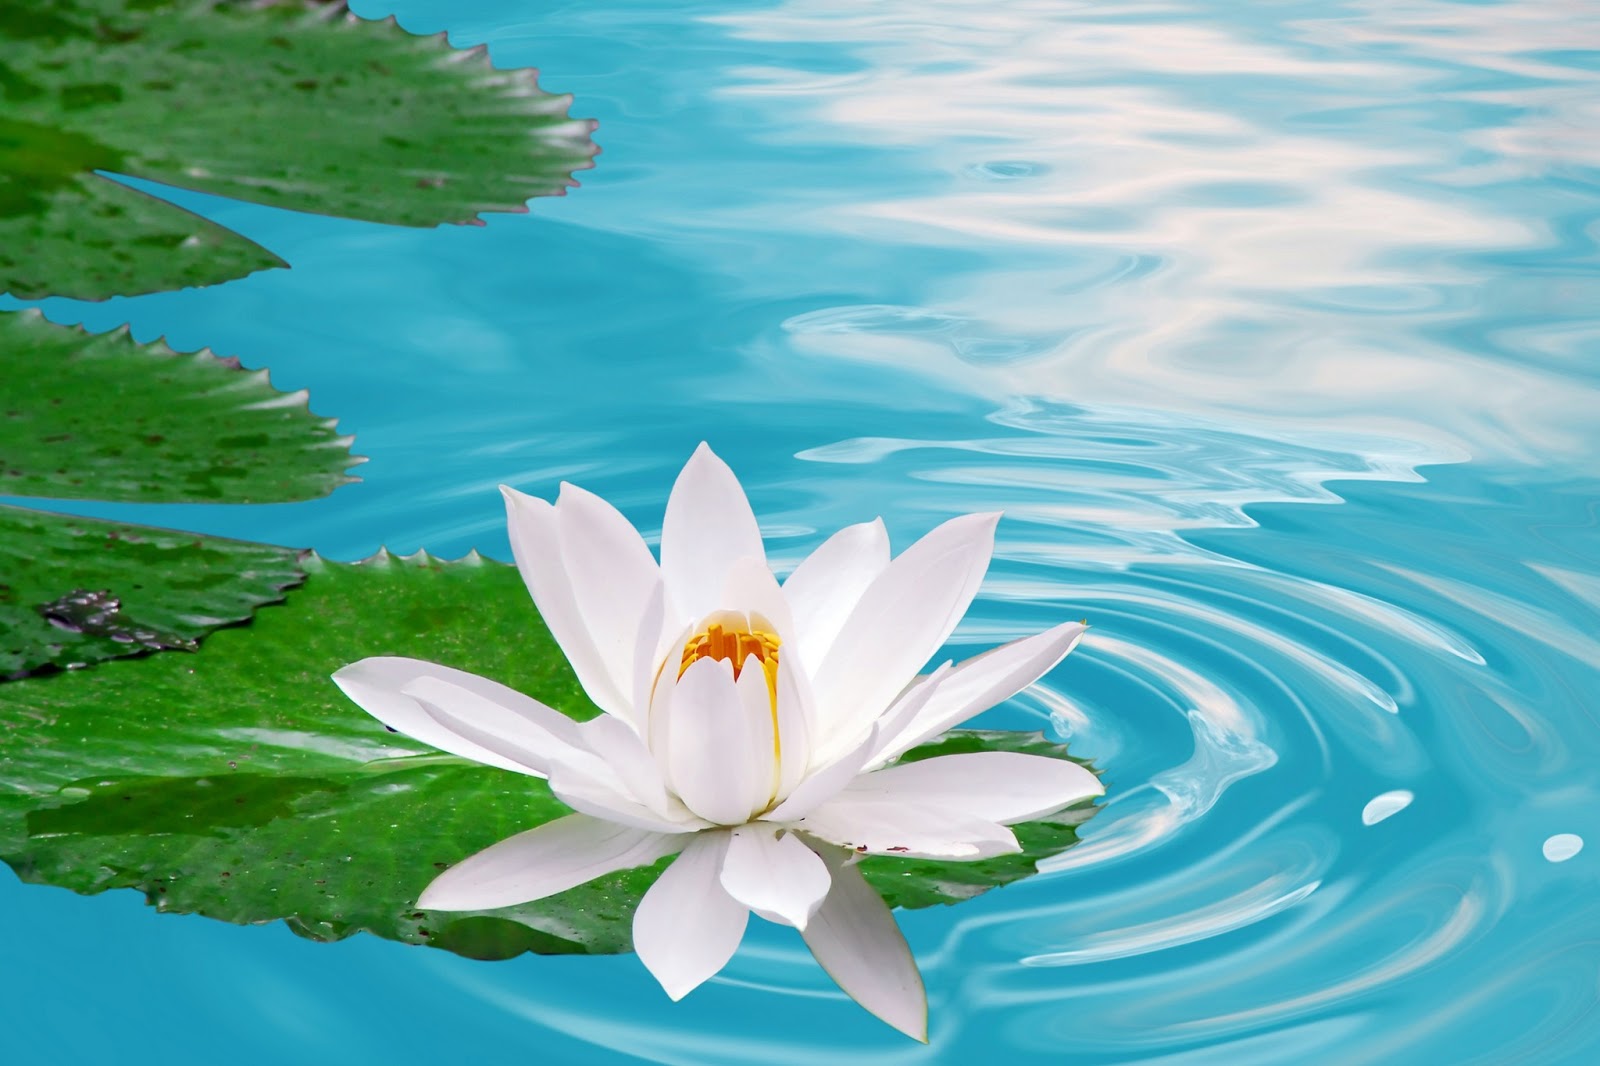 Lotus Flower HD wallpapers là lựa chọn vô cùng tuyệt vời để tăng cường sức khoẻ và tâm trạng của bạn. Với chất lượng hình ảnh cao cấp, bạn có thể tận hưởng các hình nền hoa sen đẹp nhất và tạo nên một không gian sống tuyệt vời.